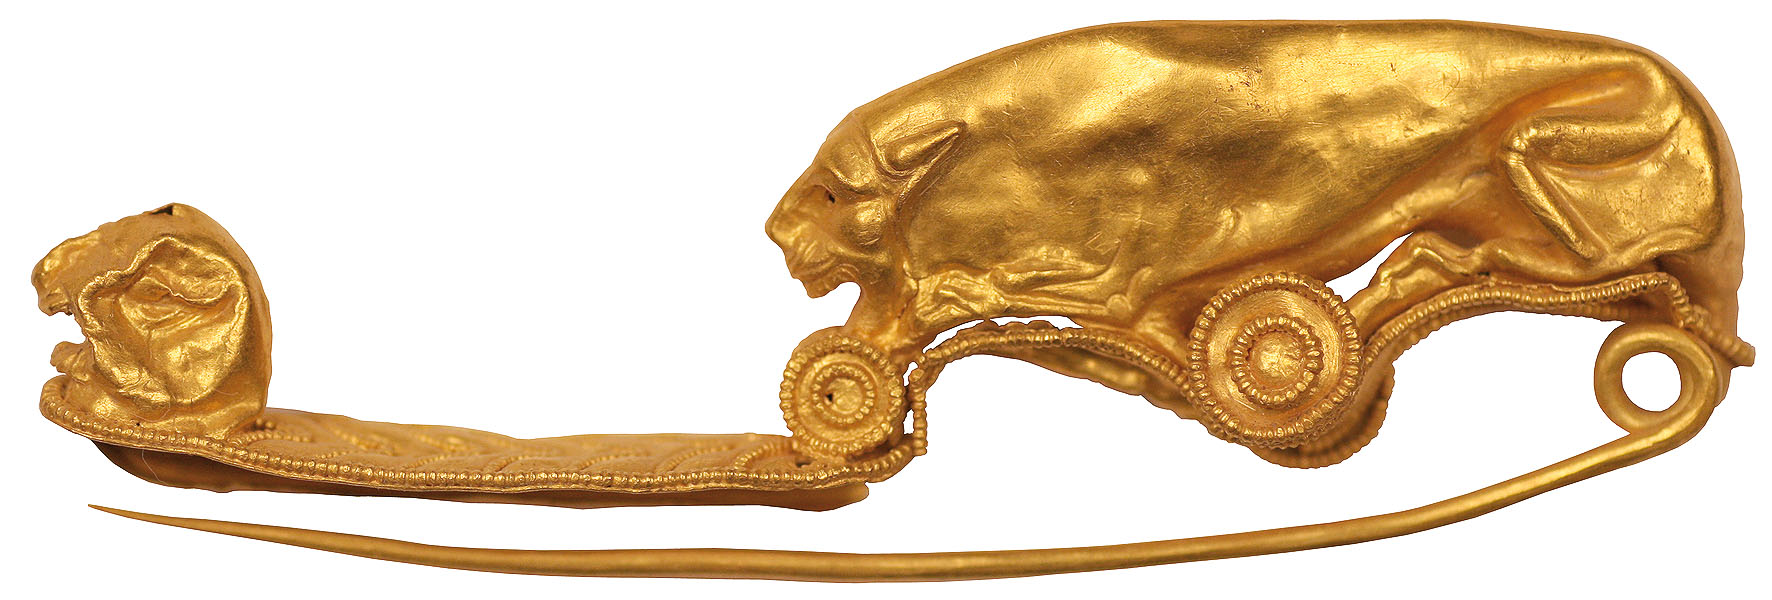 La fibule étrusque en or conservée au MAEC